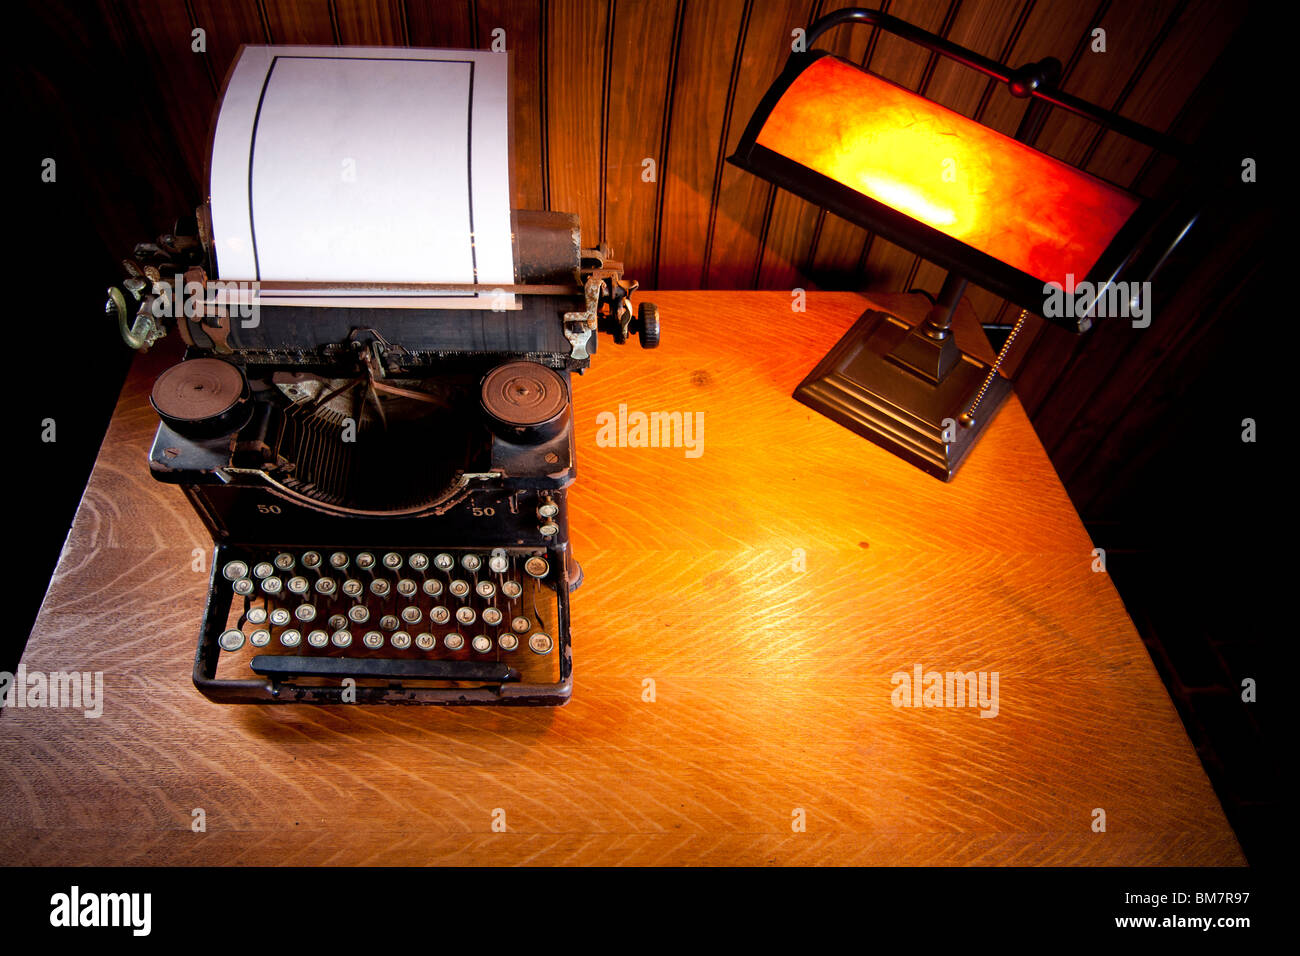 Escritorio de madera iluminada por una lámpara vieja con luz amarilla y un histórico rusty typewriter plastificado con una hoja de papel en blanco. Foto de stock